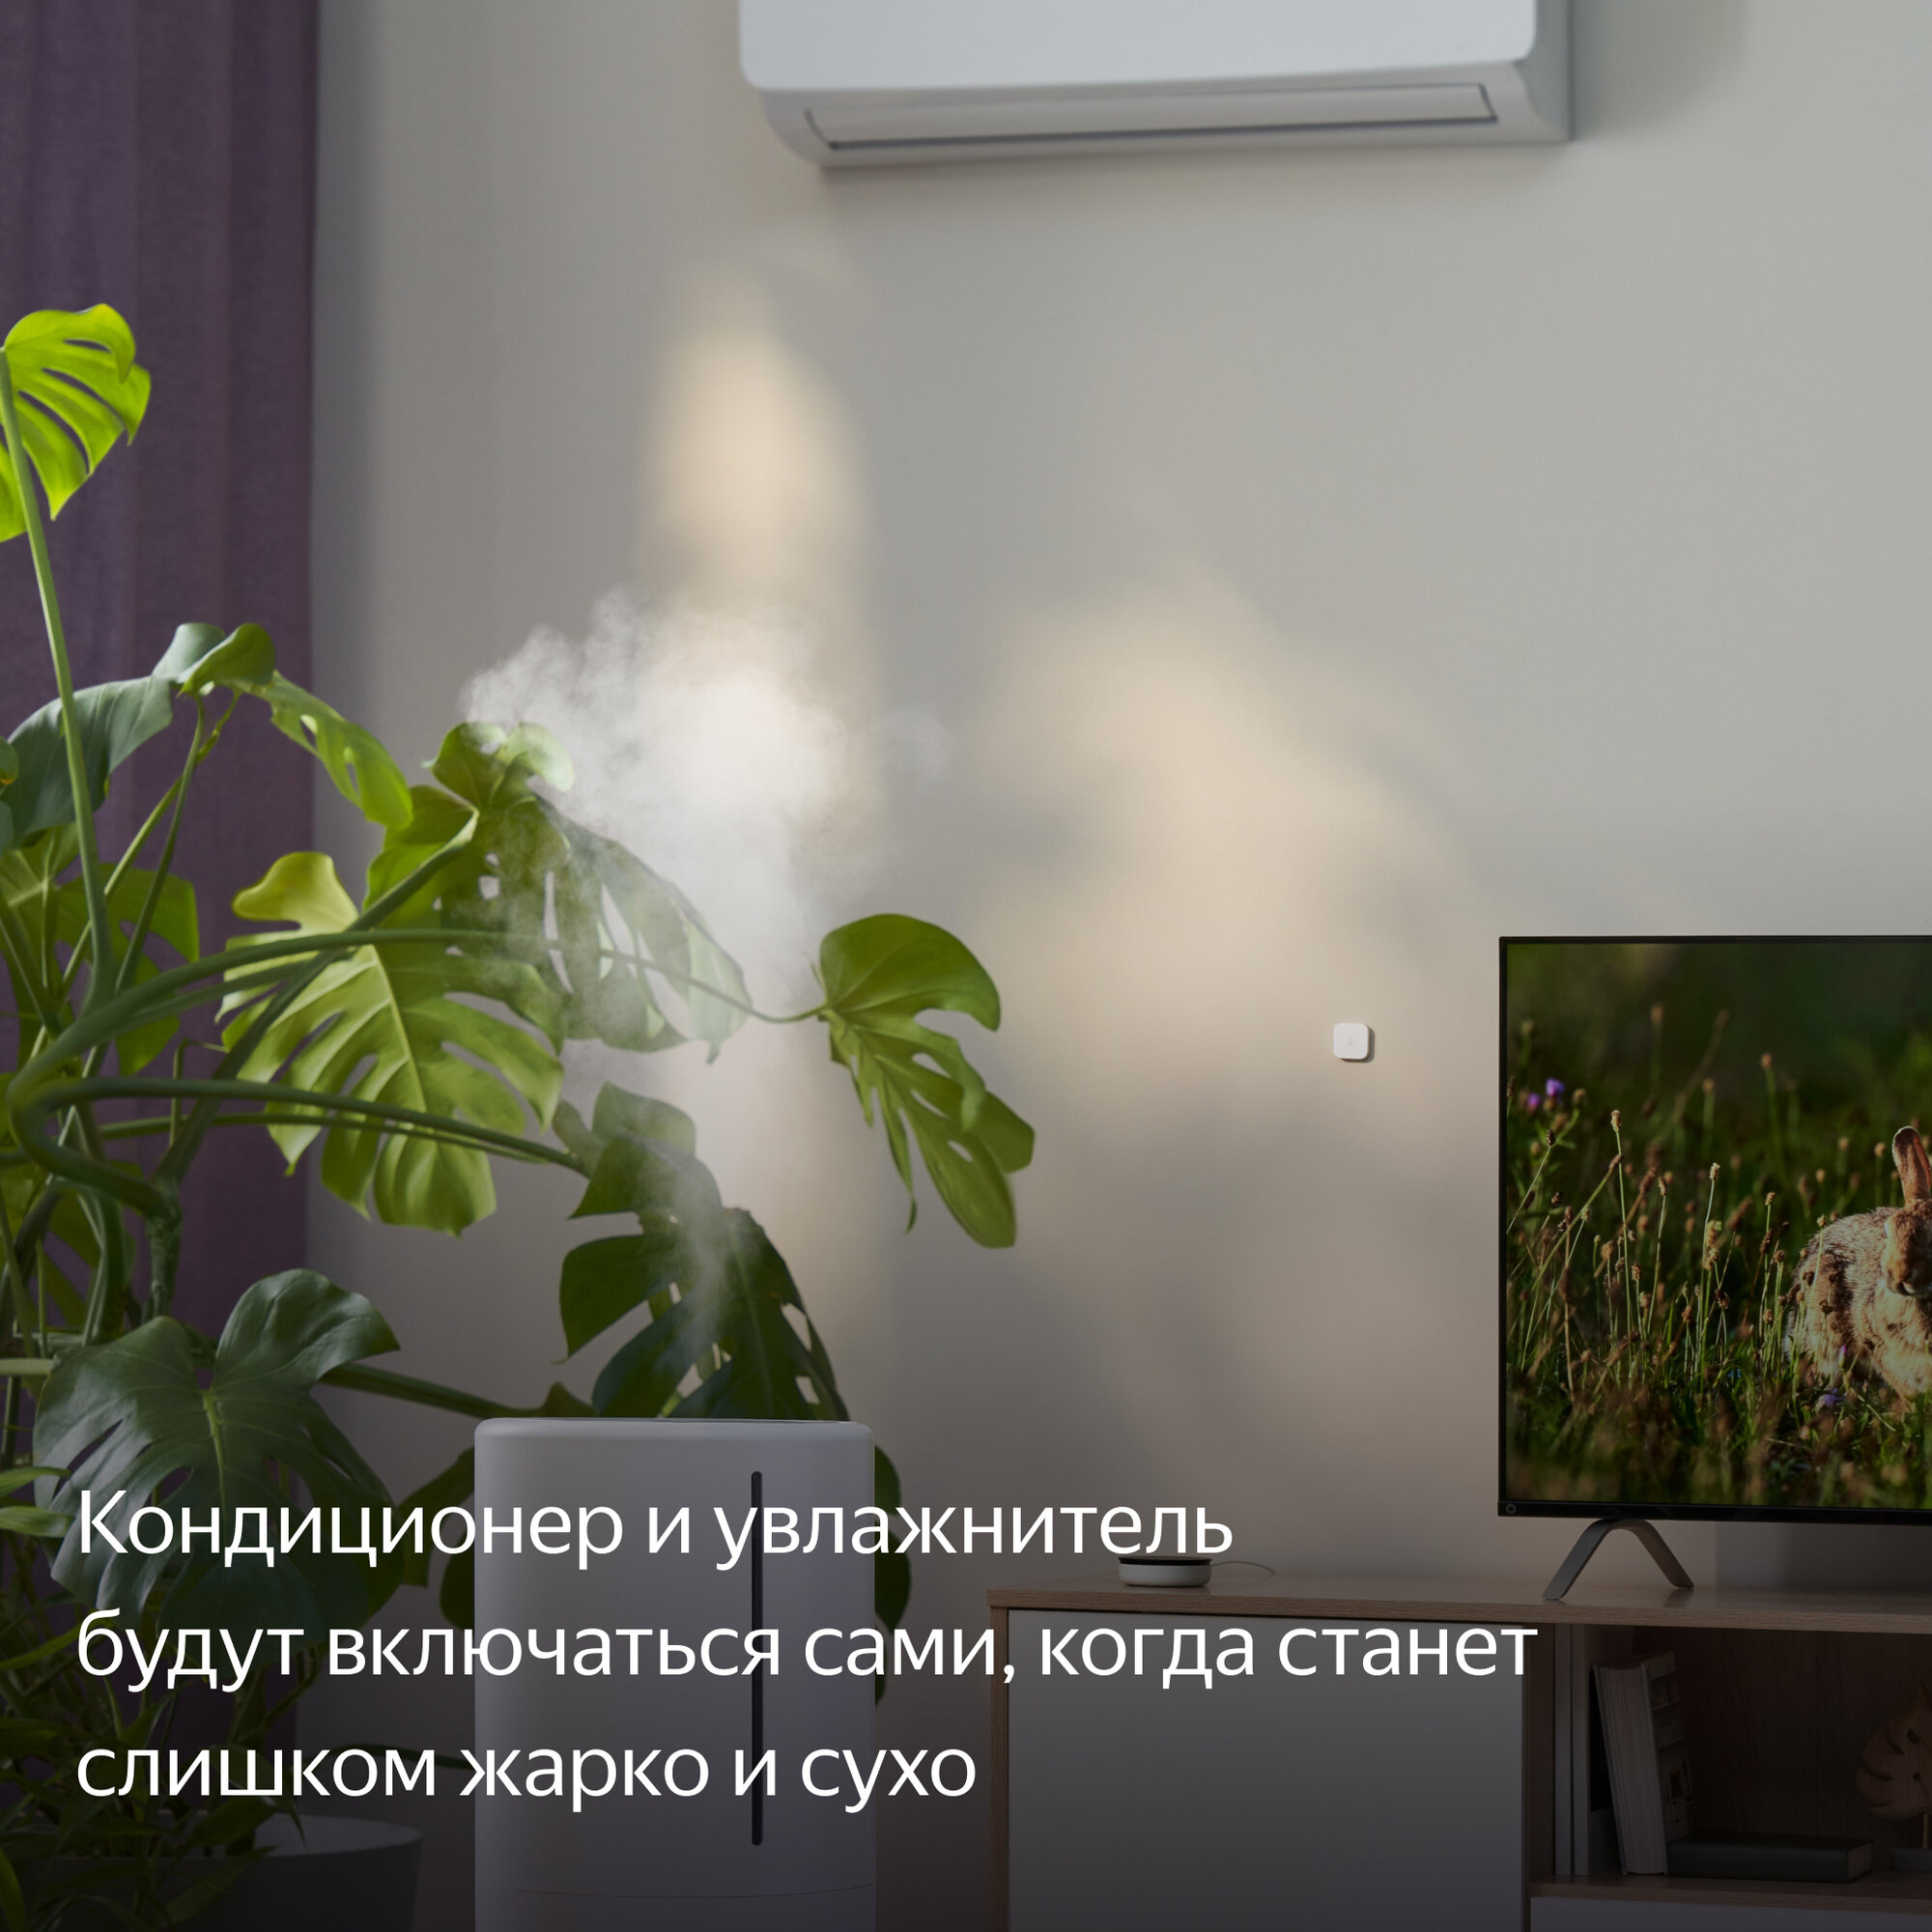 Датчик температуры и влажности, Яндекс, Zigbee